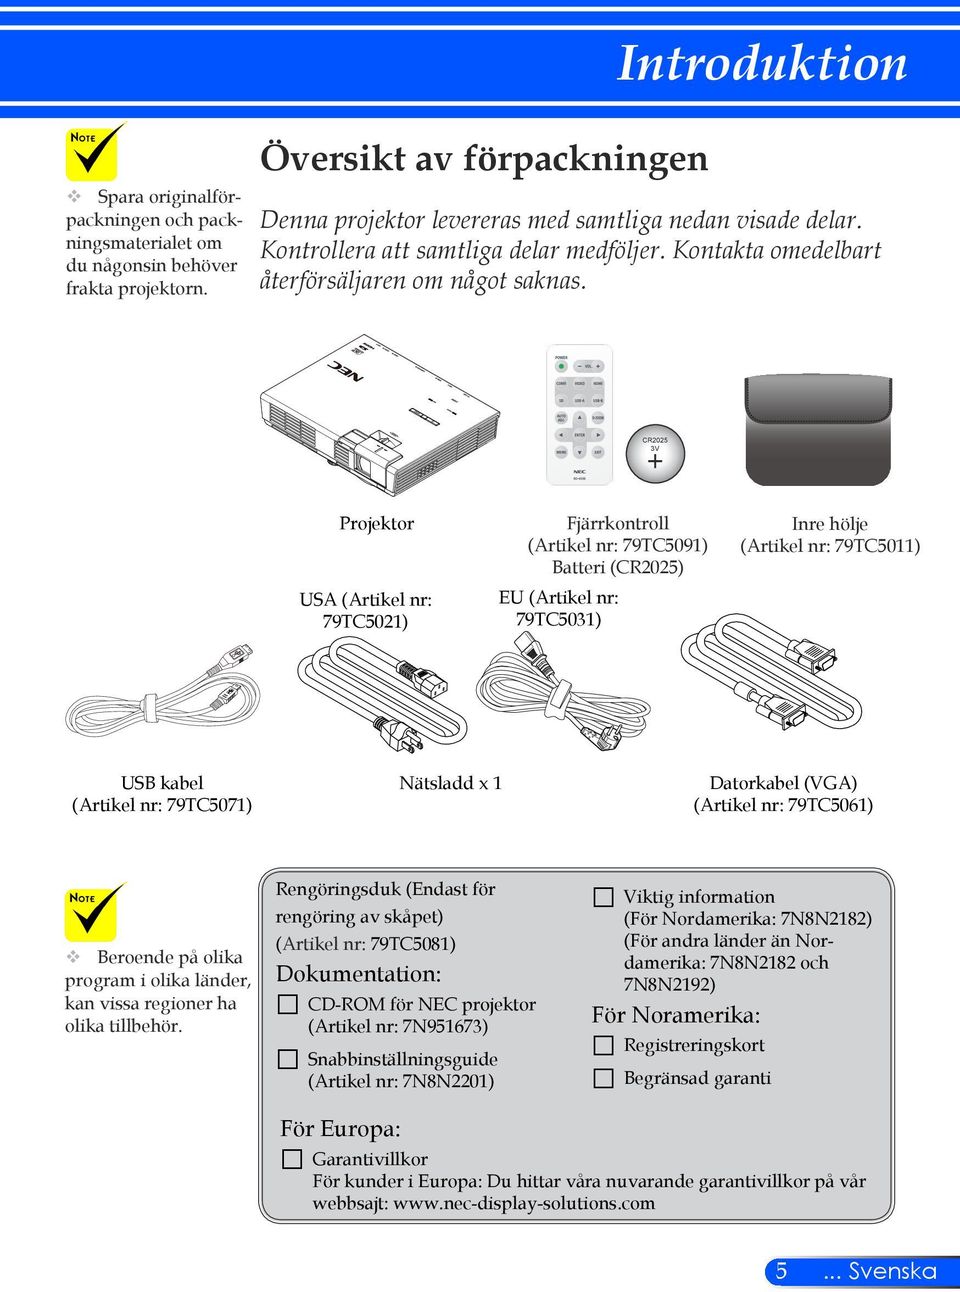 CR2025 3V Projektor USA (Artikel nr: 79TC5021) Fjärrkontroll (Artikel nr: 79TC5091) Batteri (CR2025) EU (Artikel nr: 79TC5031) Inre hölje (Artikel nr: 79TC5011) USB kabel (Artikel nr: 79TC5071)